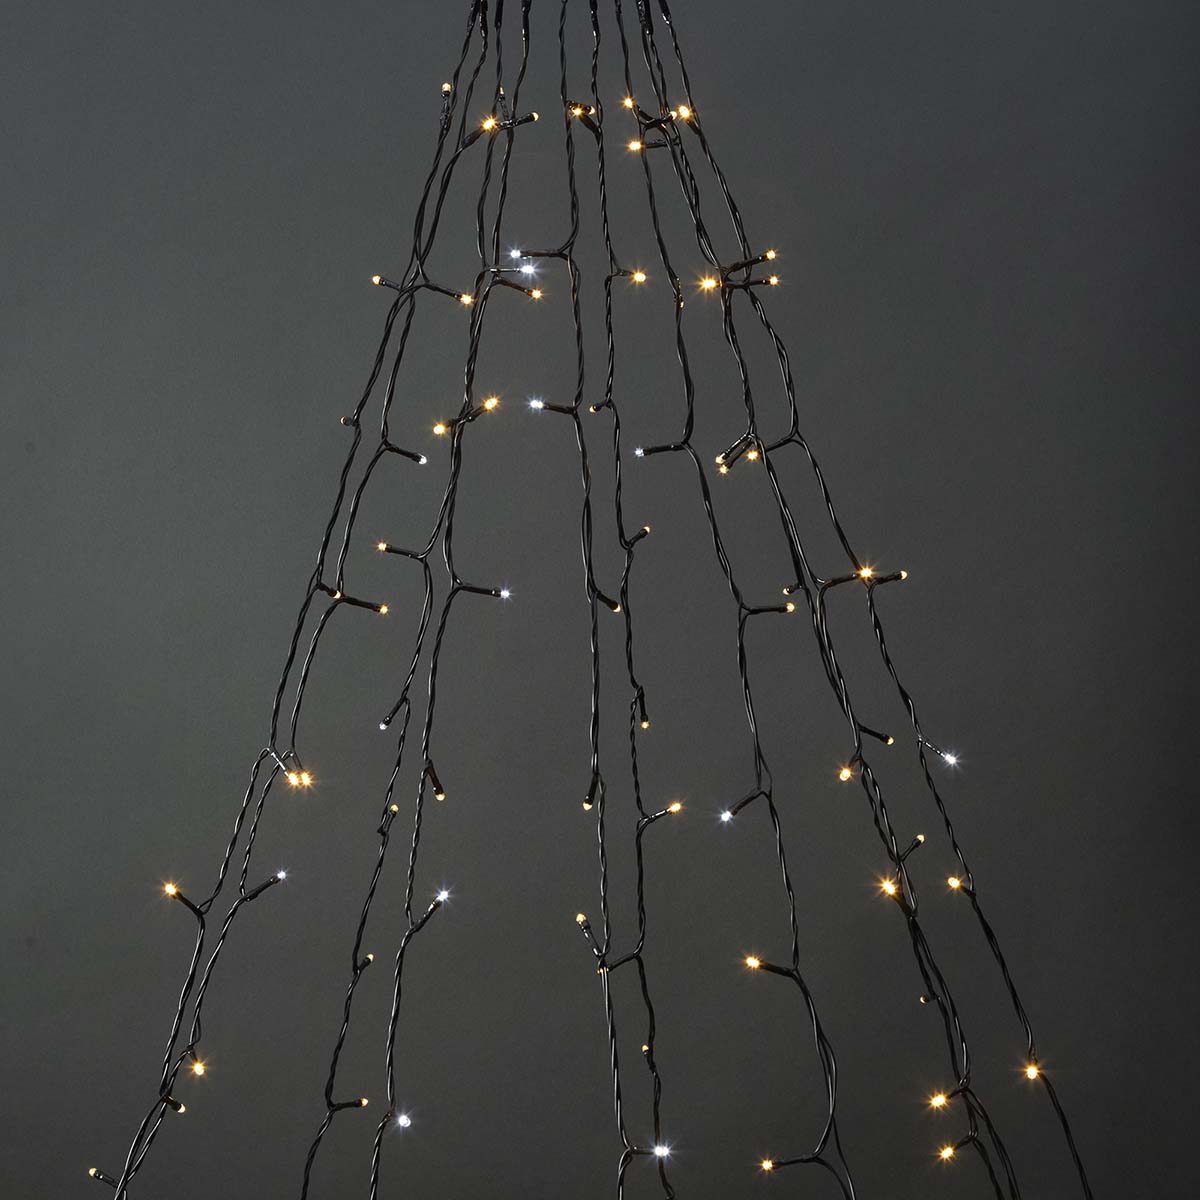 LED-Lichterkette Baum weiß 200 LEDs 10x2m jetzt kaufen - Aktionskönig